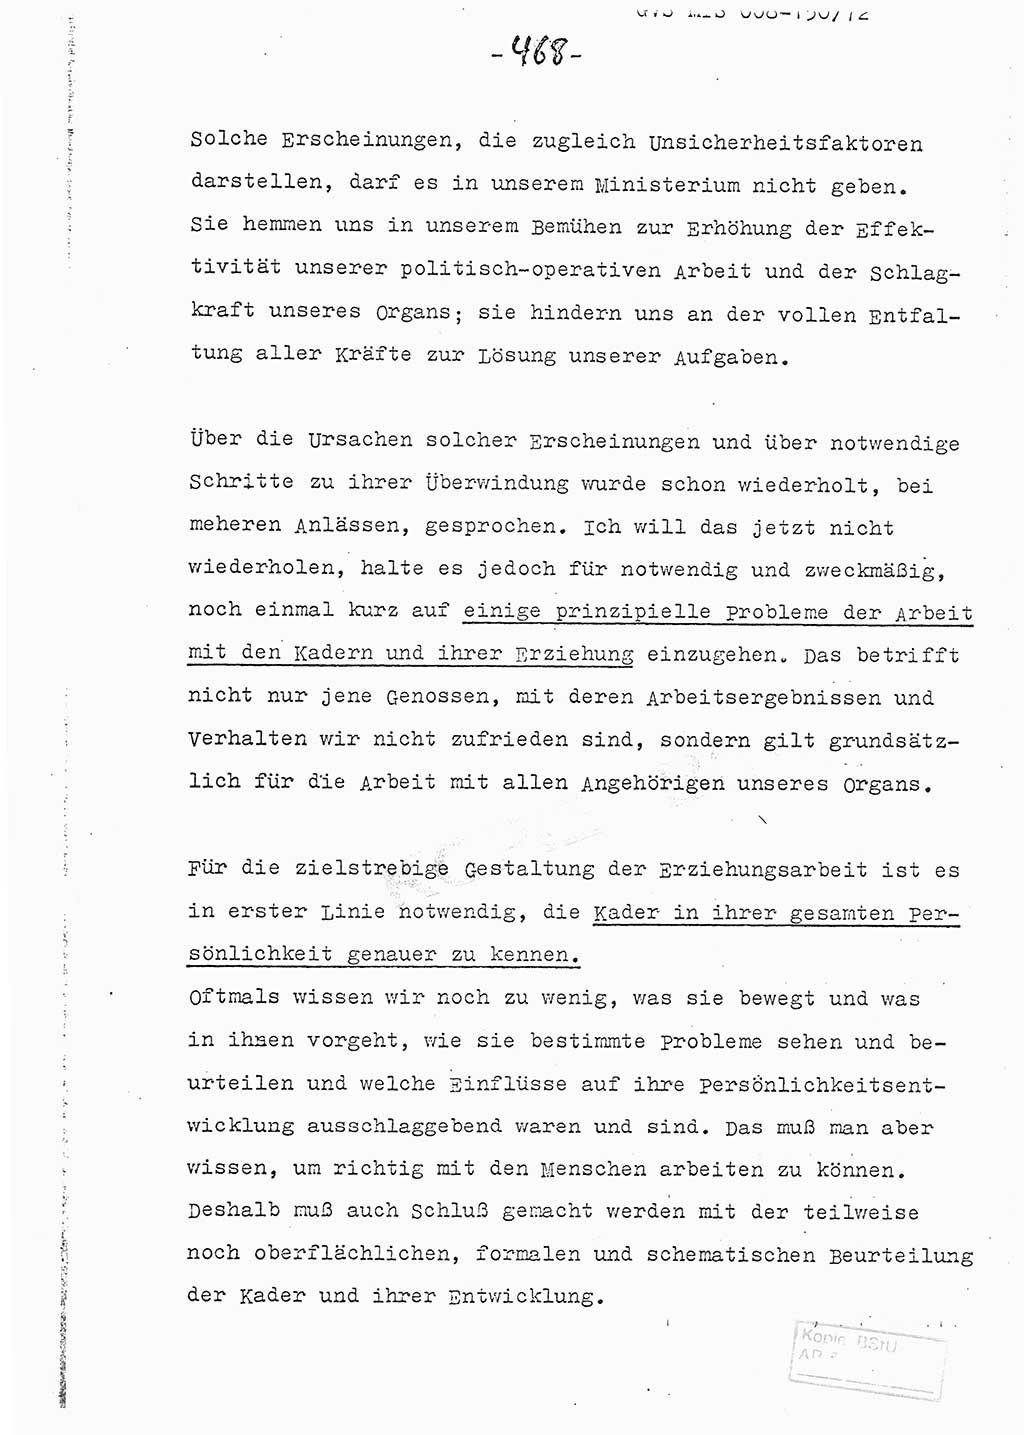 Referat (Entwurf) des Genossen Minister (Generaloberst Erich Mielke) auf der Dienstkonferenz 1972, Ministerium für Staatssicherheit (MfS) [Deutsche Demokratische Republik (DDR)], Der Minister, Geheime Verschlußsache (GVS) 008-150/72, Berlin 25.2.1972, Seite 468 (Ref. Entw. DK MfS DDR Min. GVS 008-150/72 1972, S. 468)